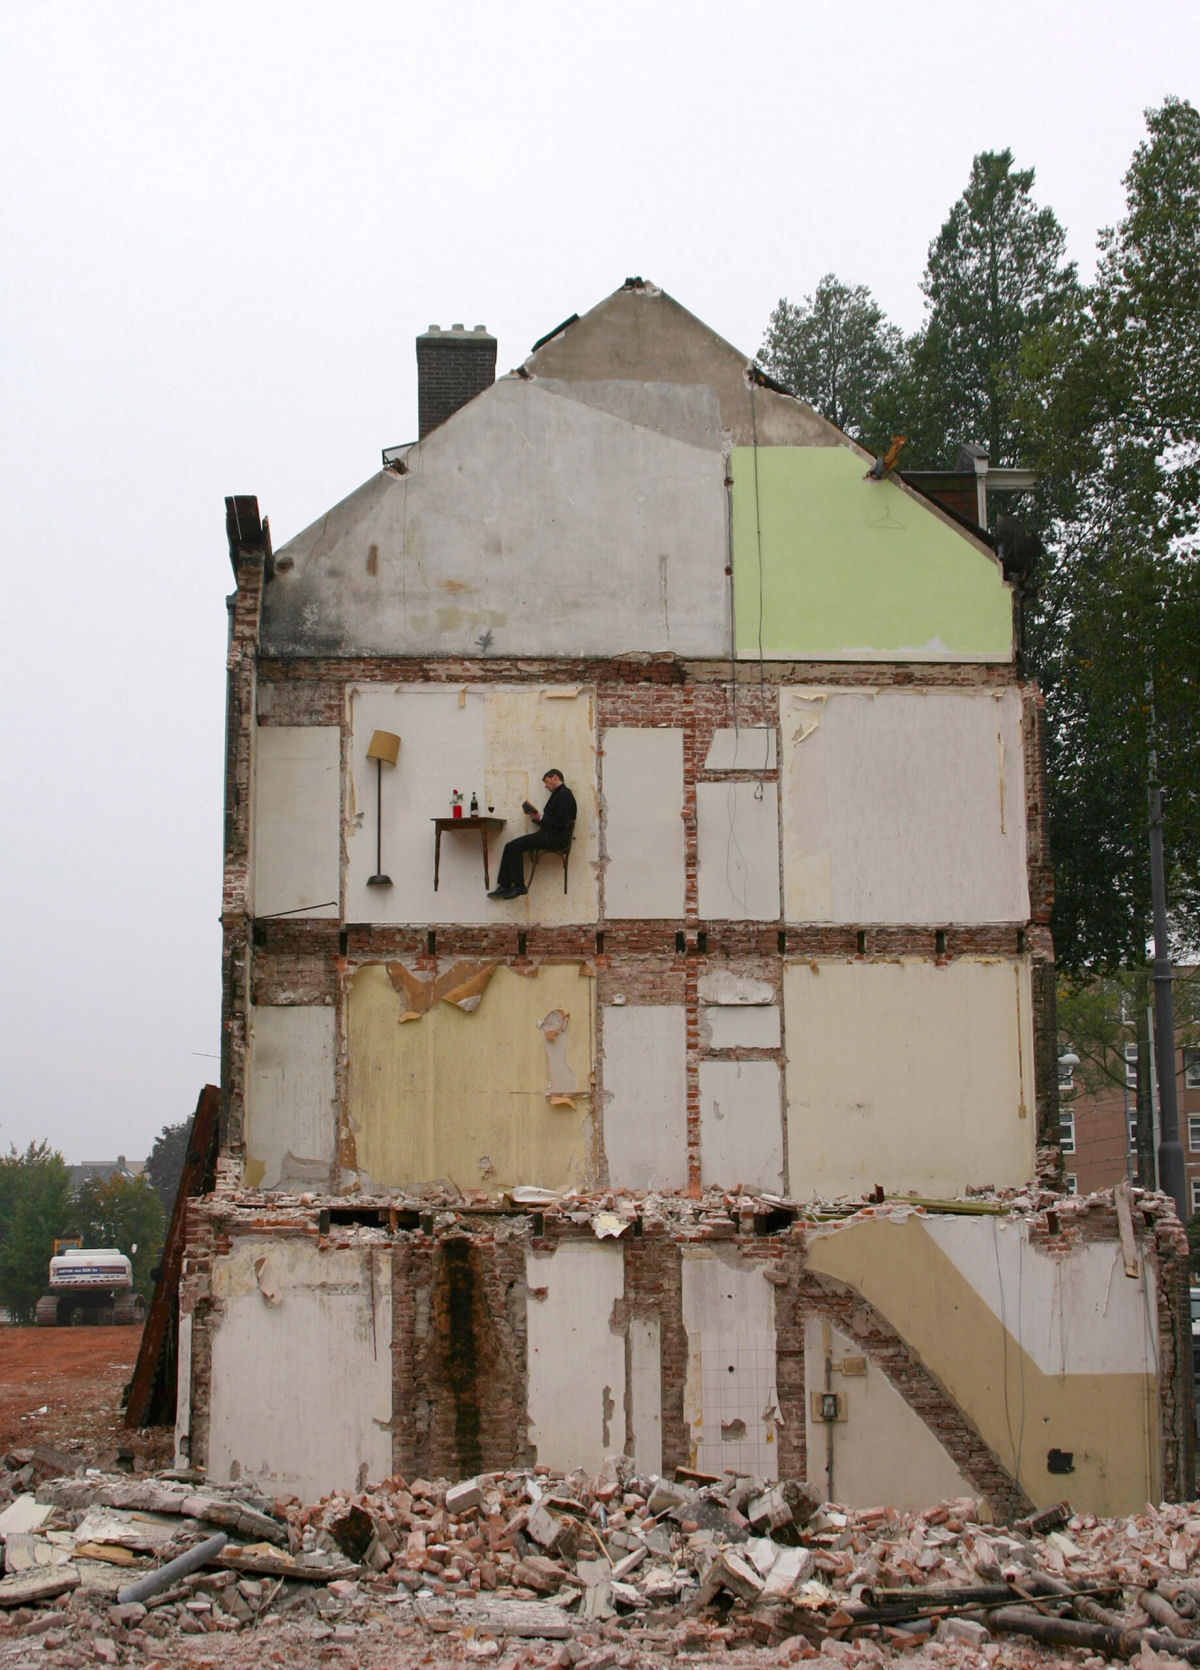 Artista performático vive cenas domésticas suspensas em edifícios em ruínas 03